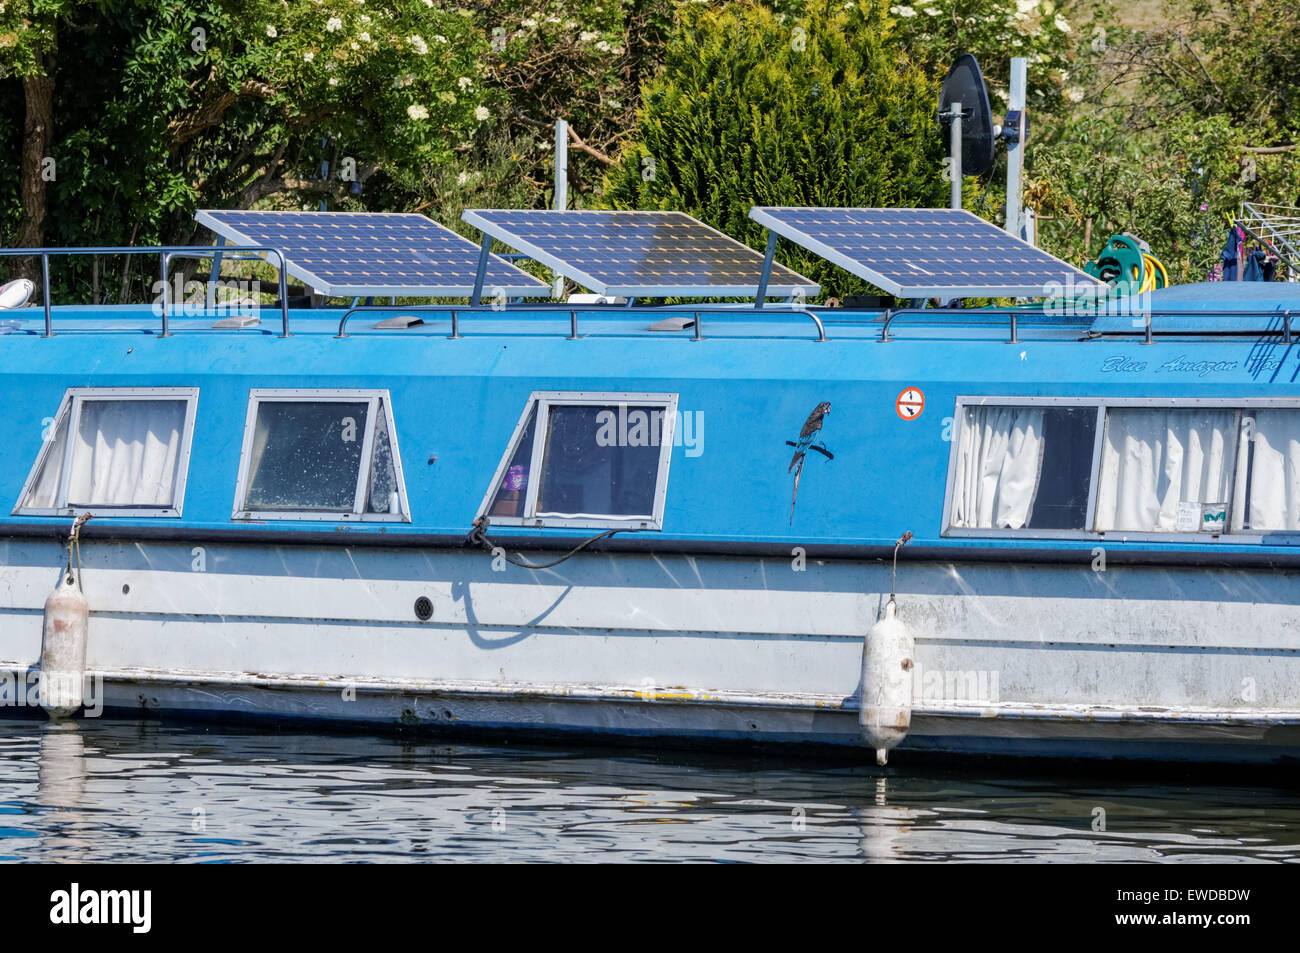 Boat with solar panels, London England United Kingdom UK Stock Photo